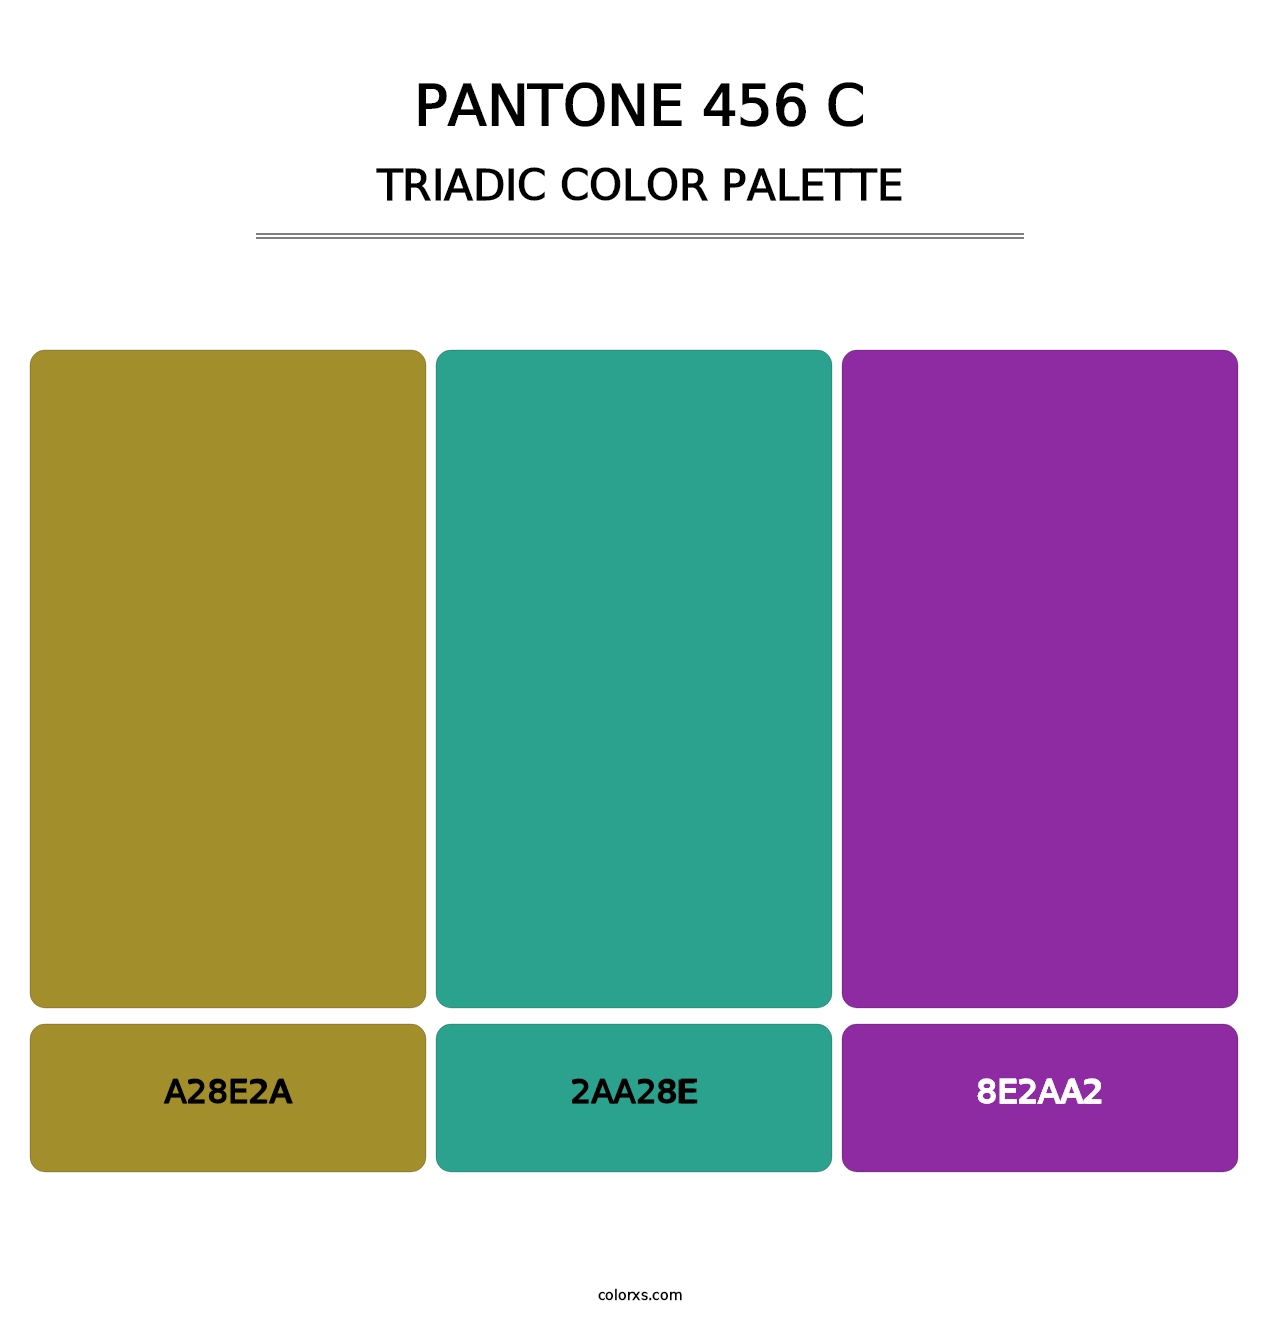 PANTONE 456 C - Triadic Color Palette